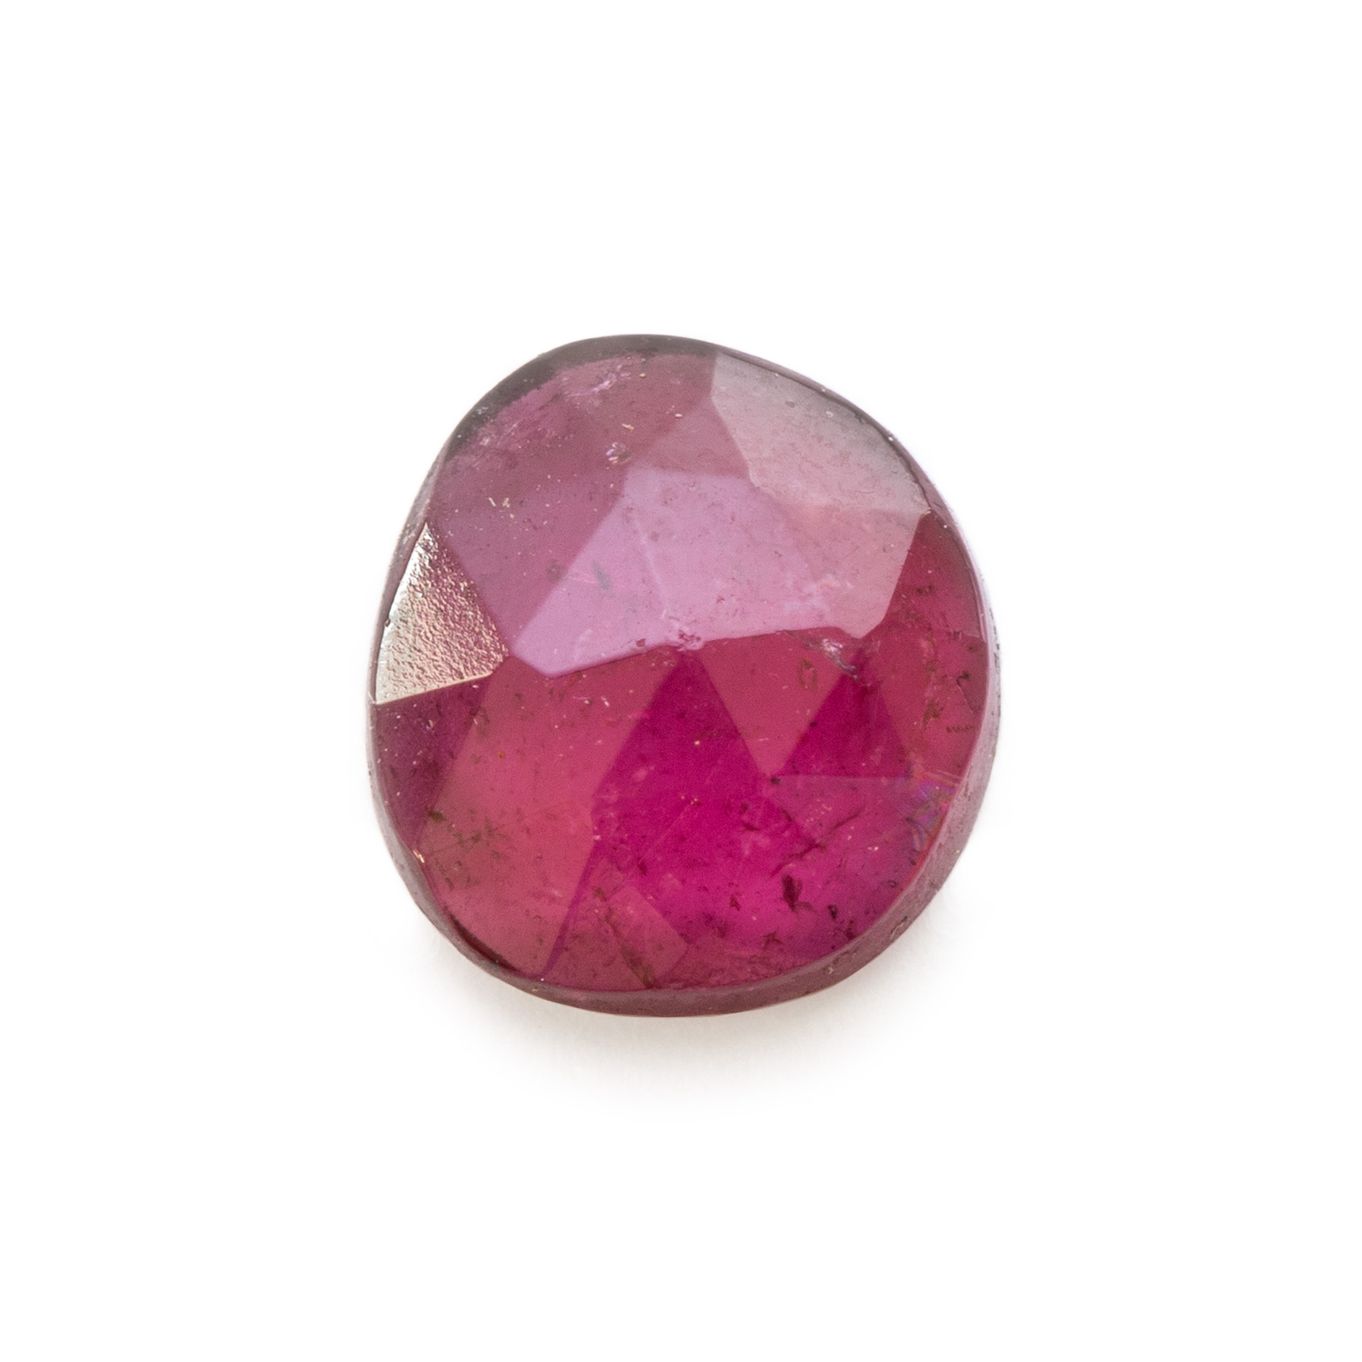 Rhodolite Garnet in Quartz & Schist Matrix Natural Tumbled Stones Pink  Garnet Polished Gemstones for Crafts or Crystal Grid One Stone 